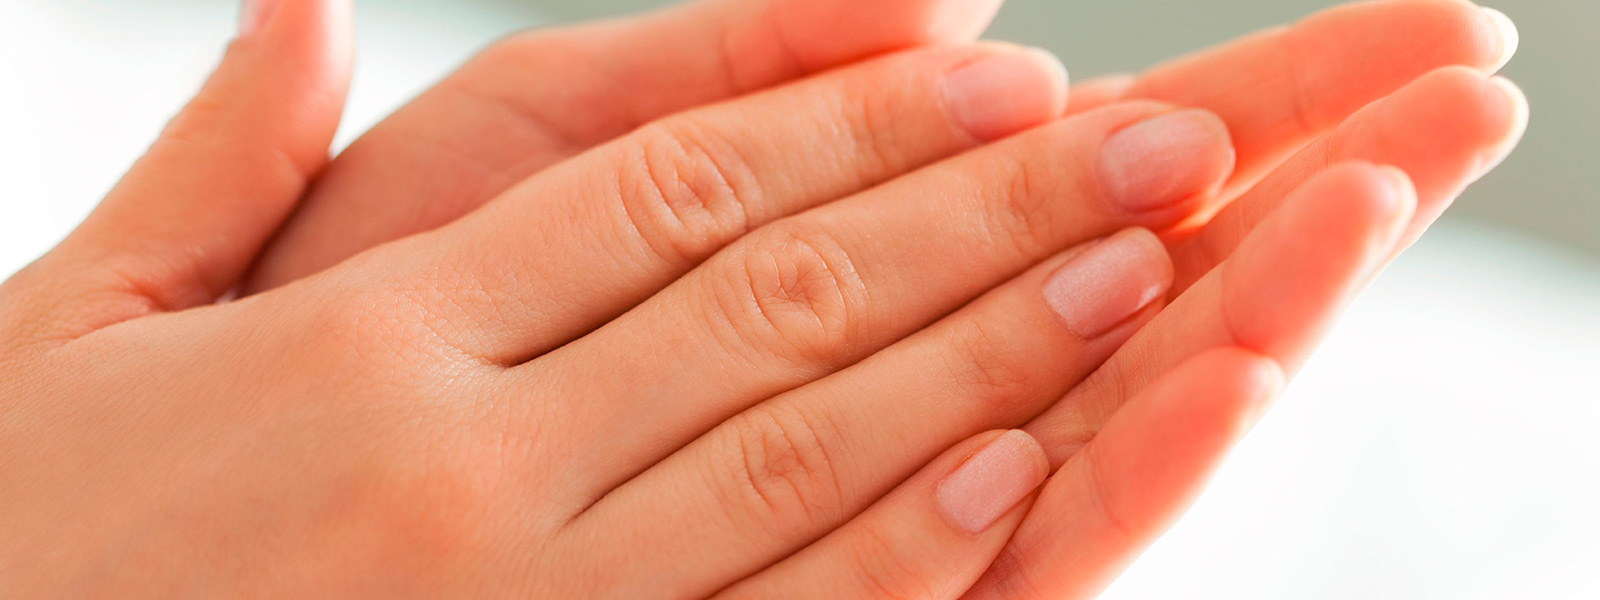 Rejuvenescimento das mãos: preenchimento com ácido hialurônico